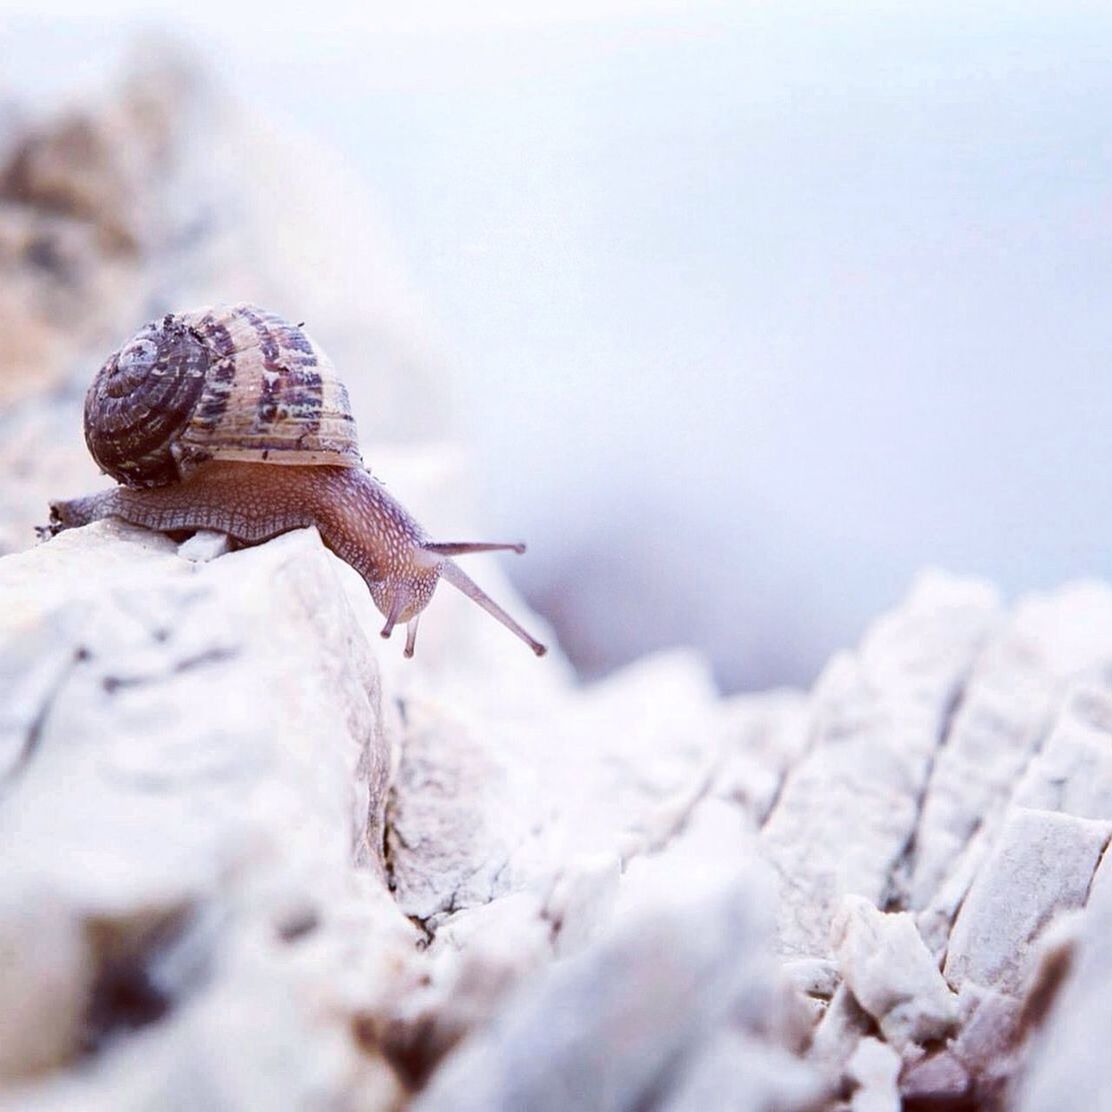 Close-up of snail on rocks